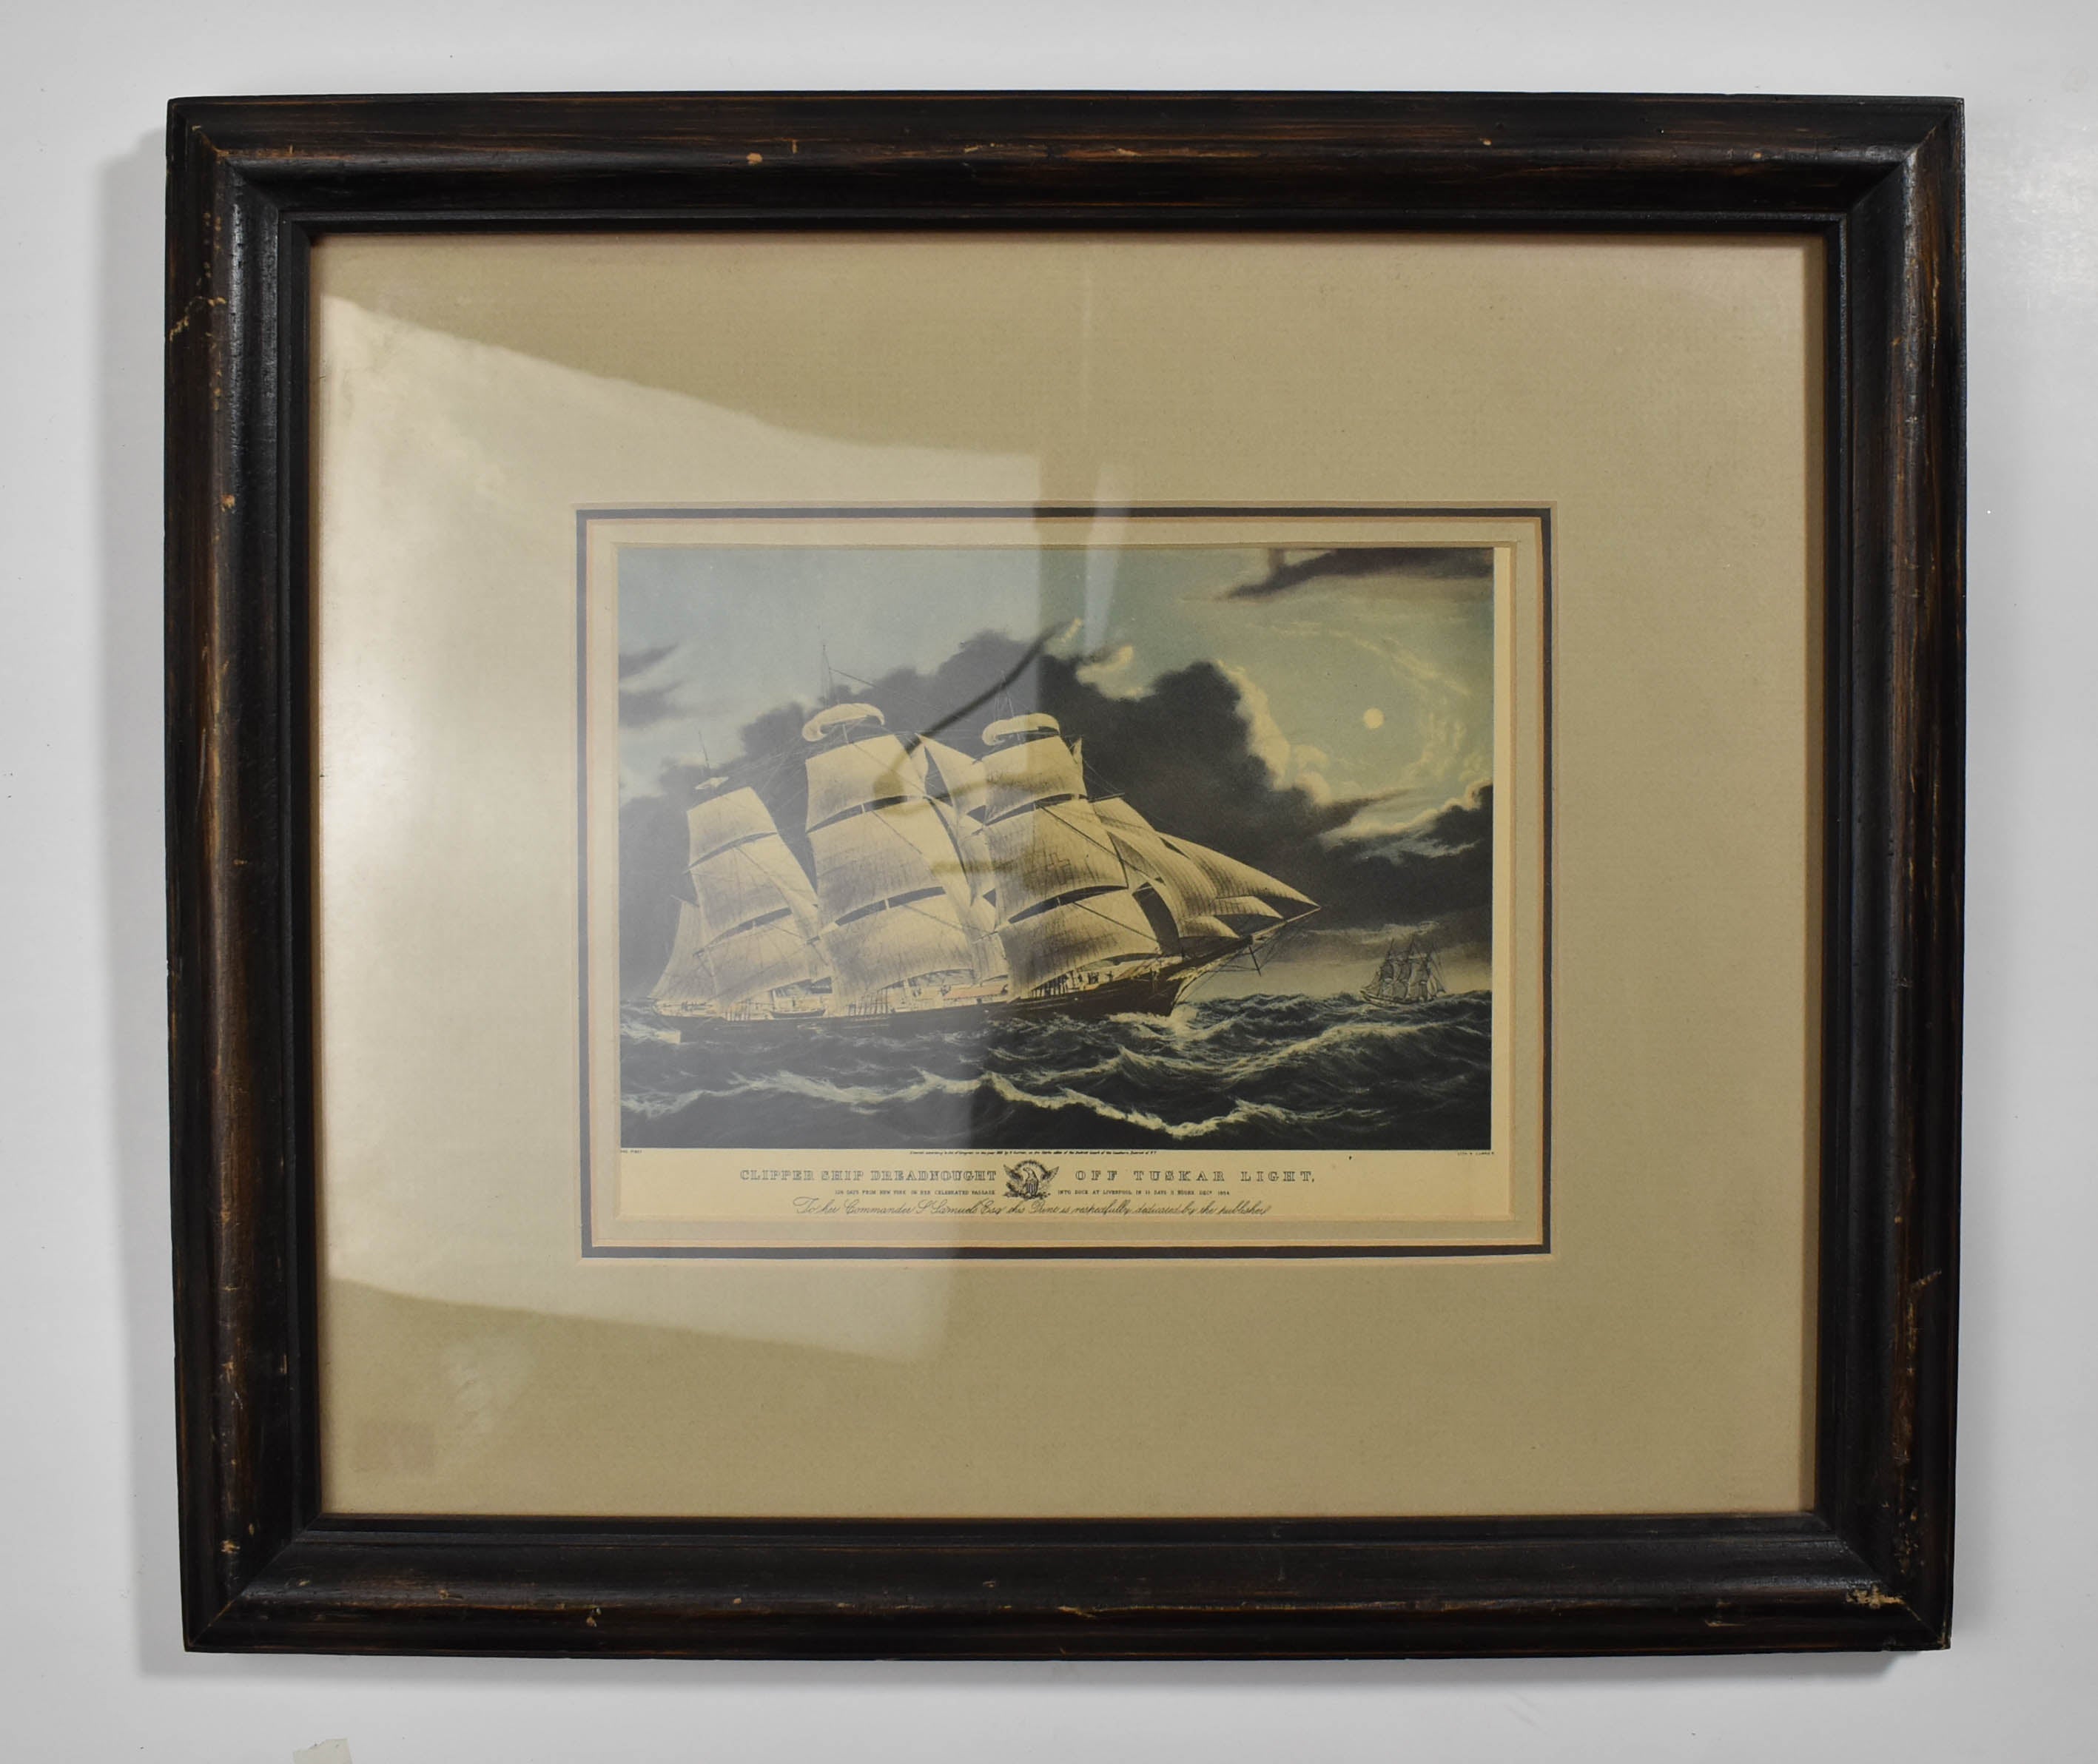 Clipper Ship Dreadnought Off Tuskar Light Historical Reprint Framed